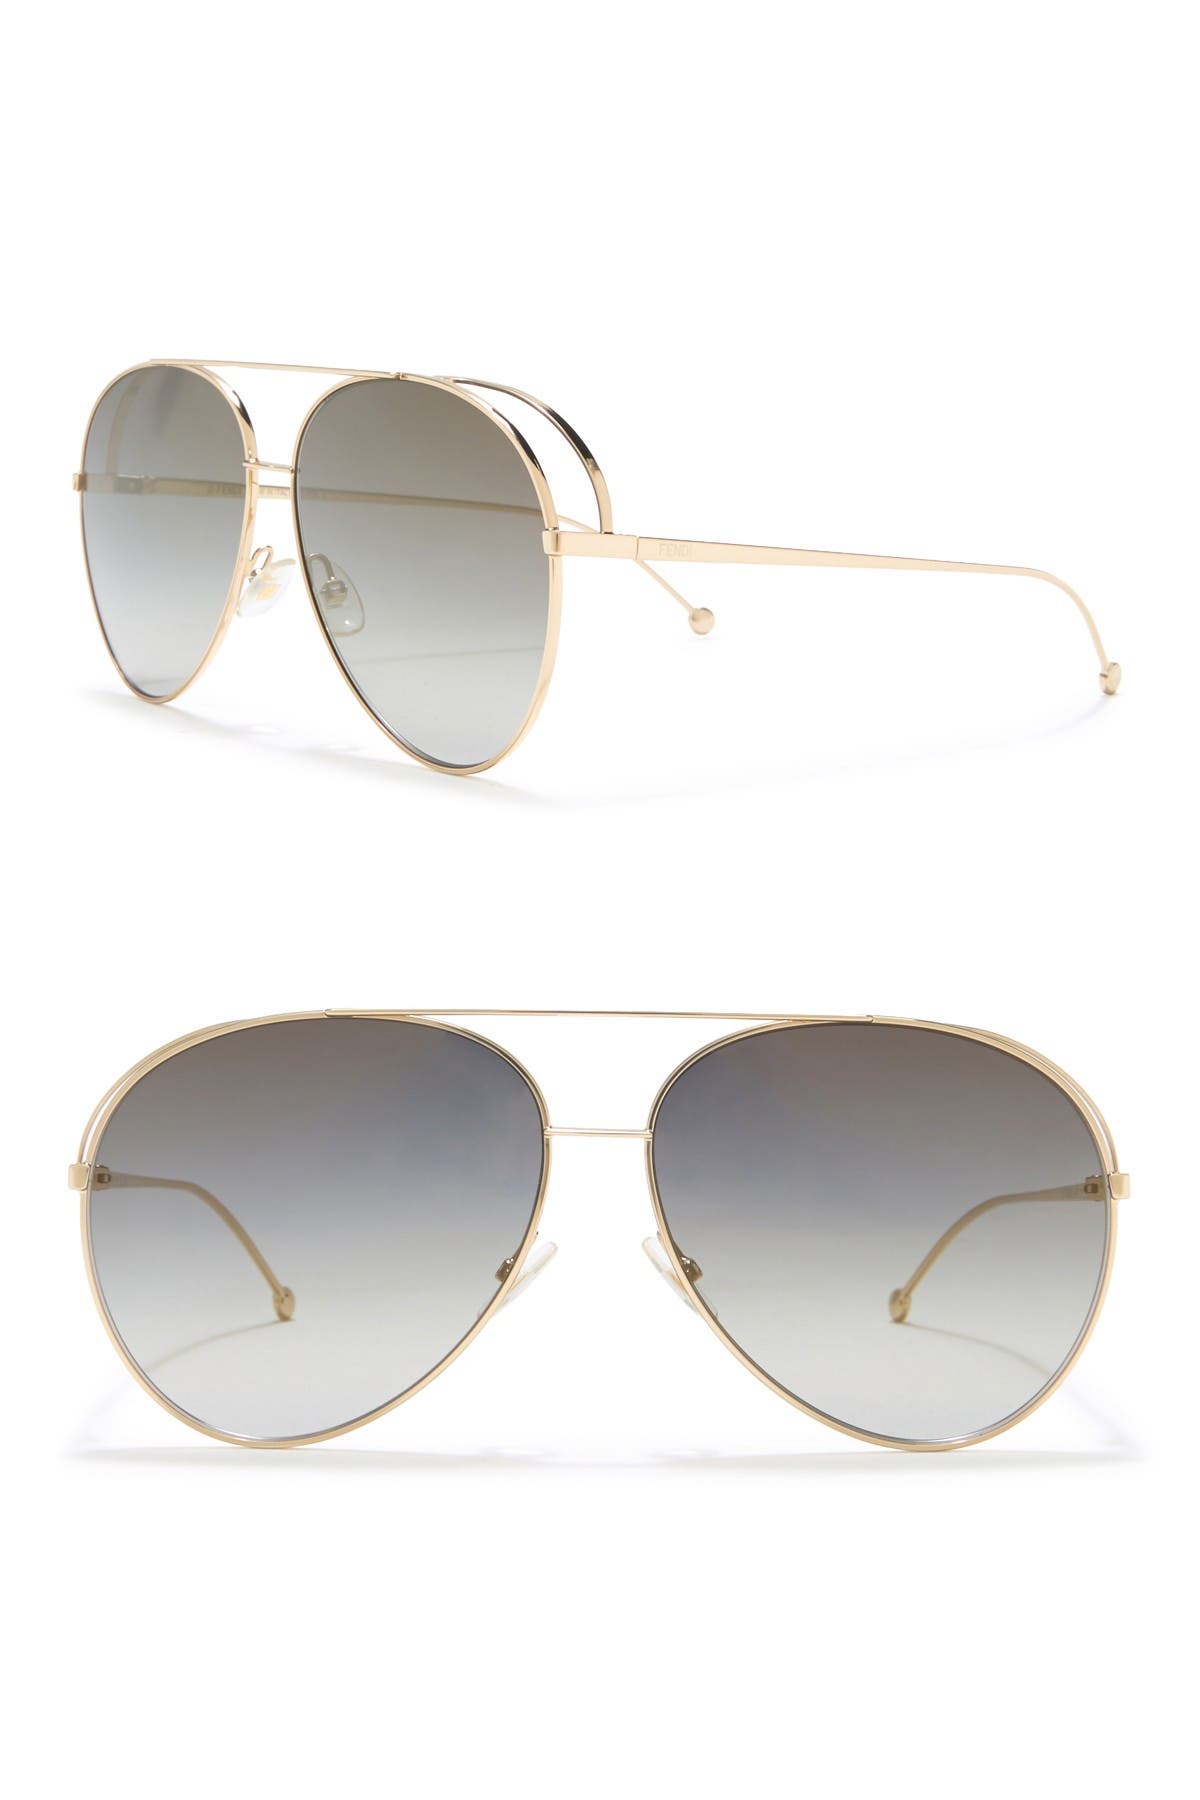 fendi women's aviator sunglasses